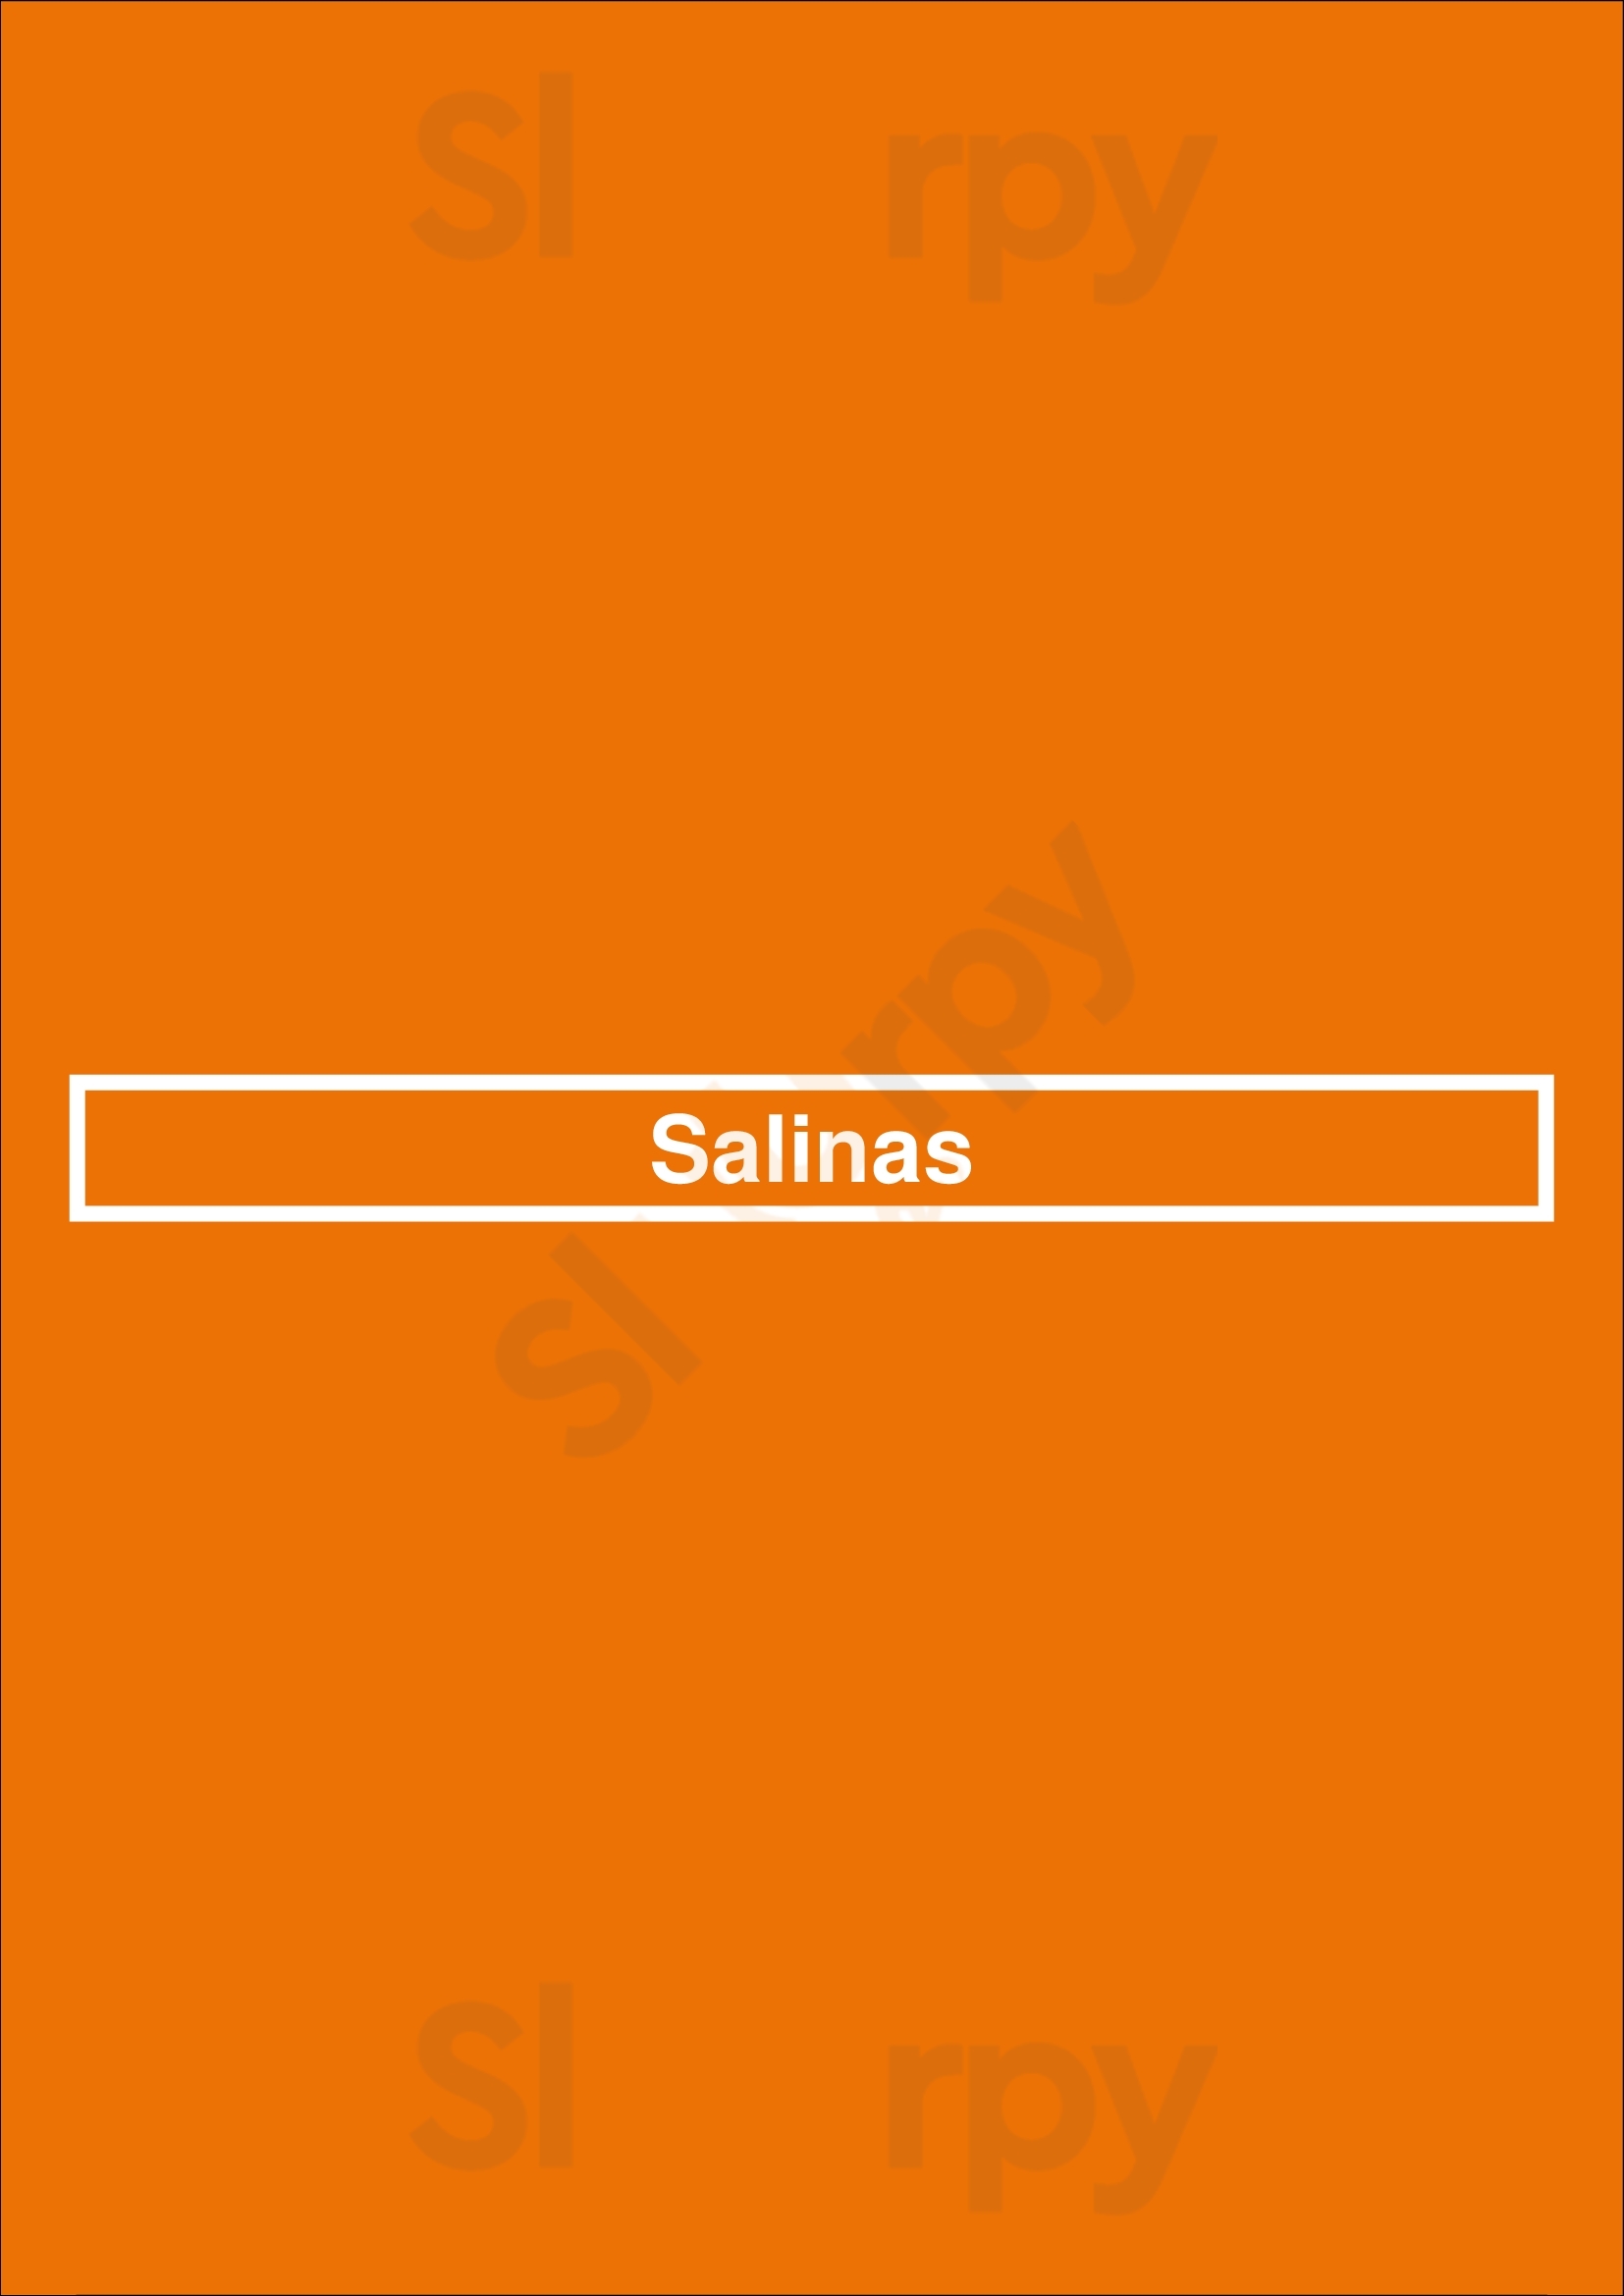 Salinas New York City Menu - 1